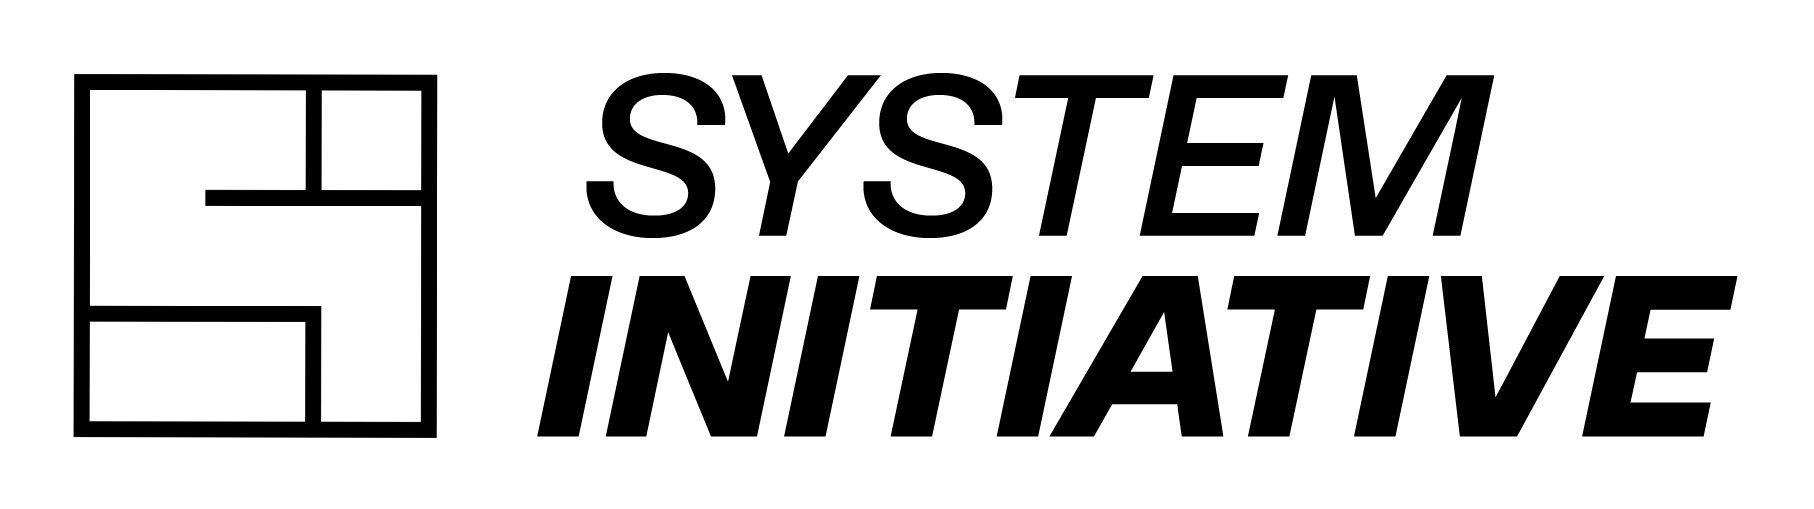 System Initiative